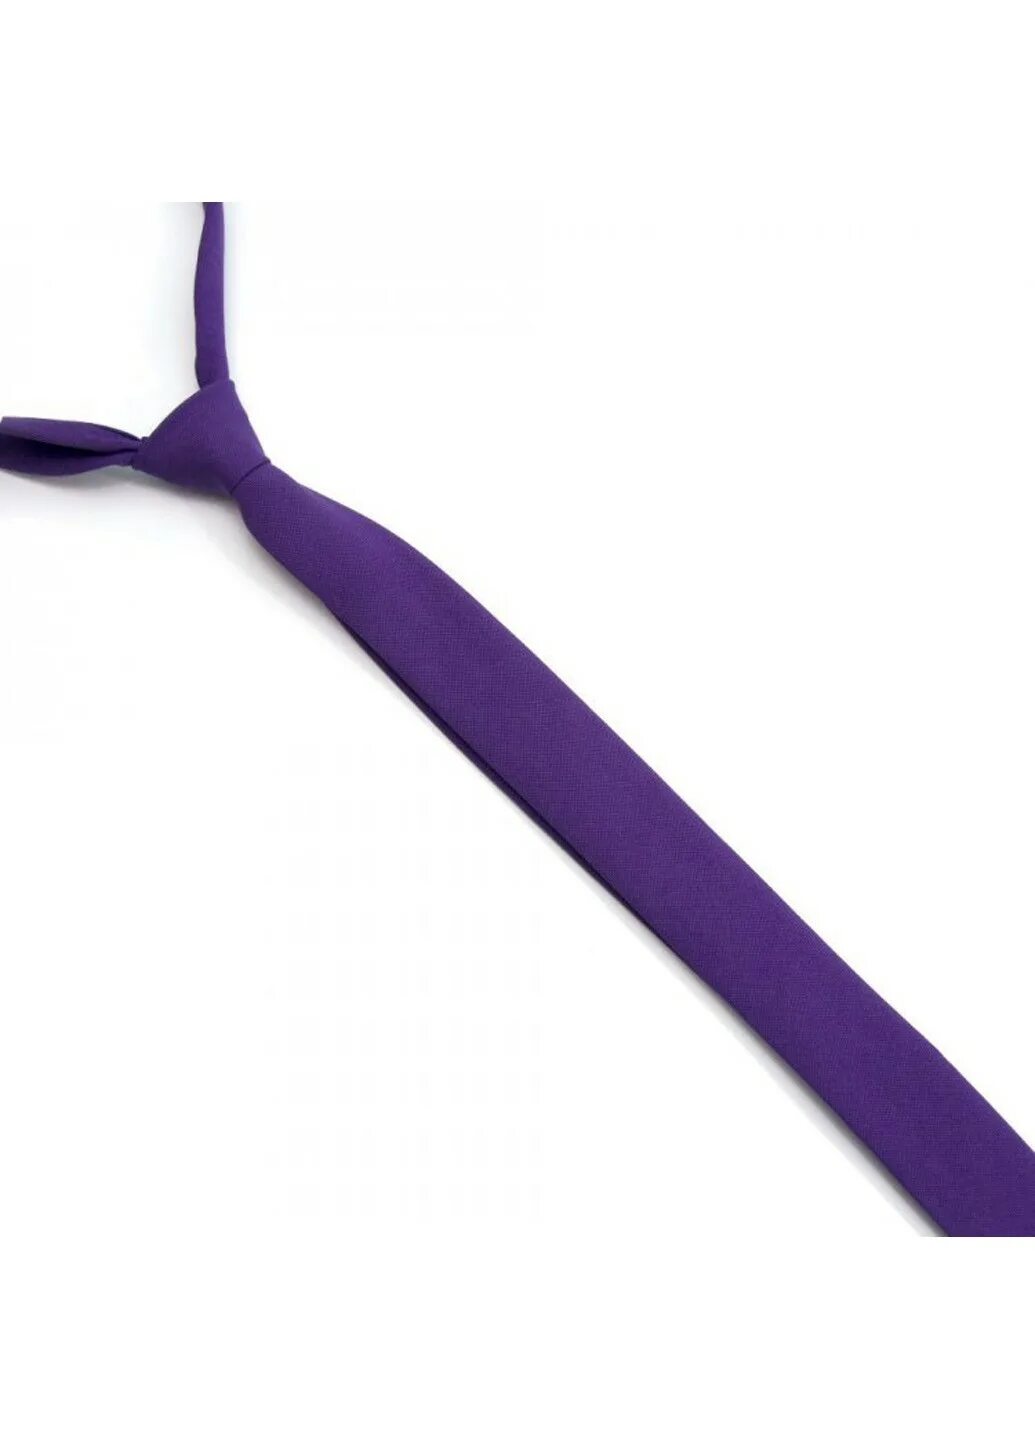 Галстук фиолетовый. Лиловый галстук. Матовый галстук.